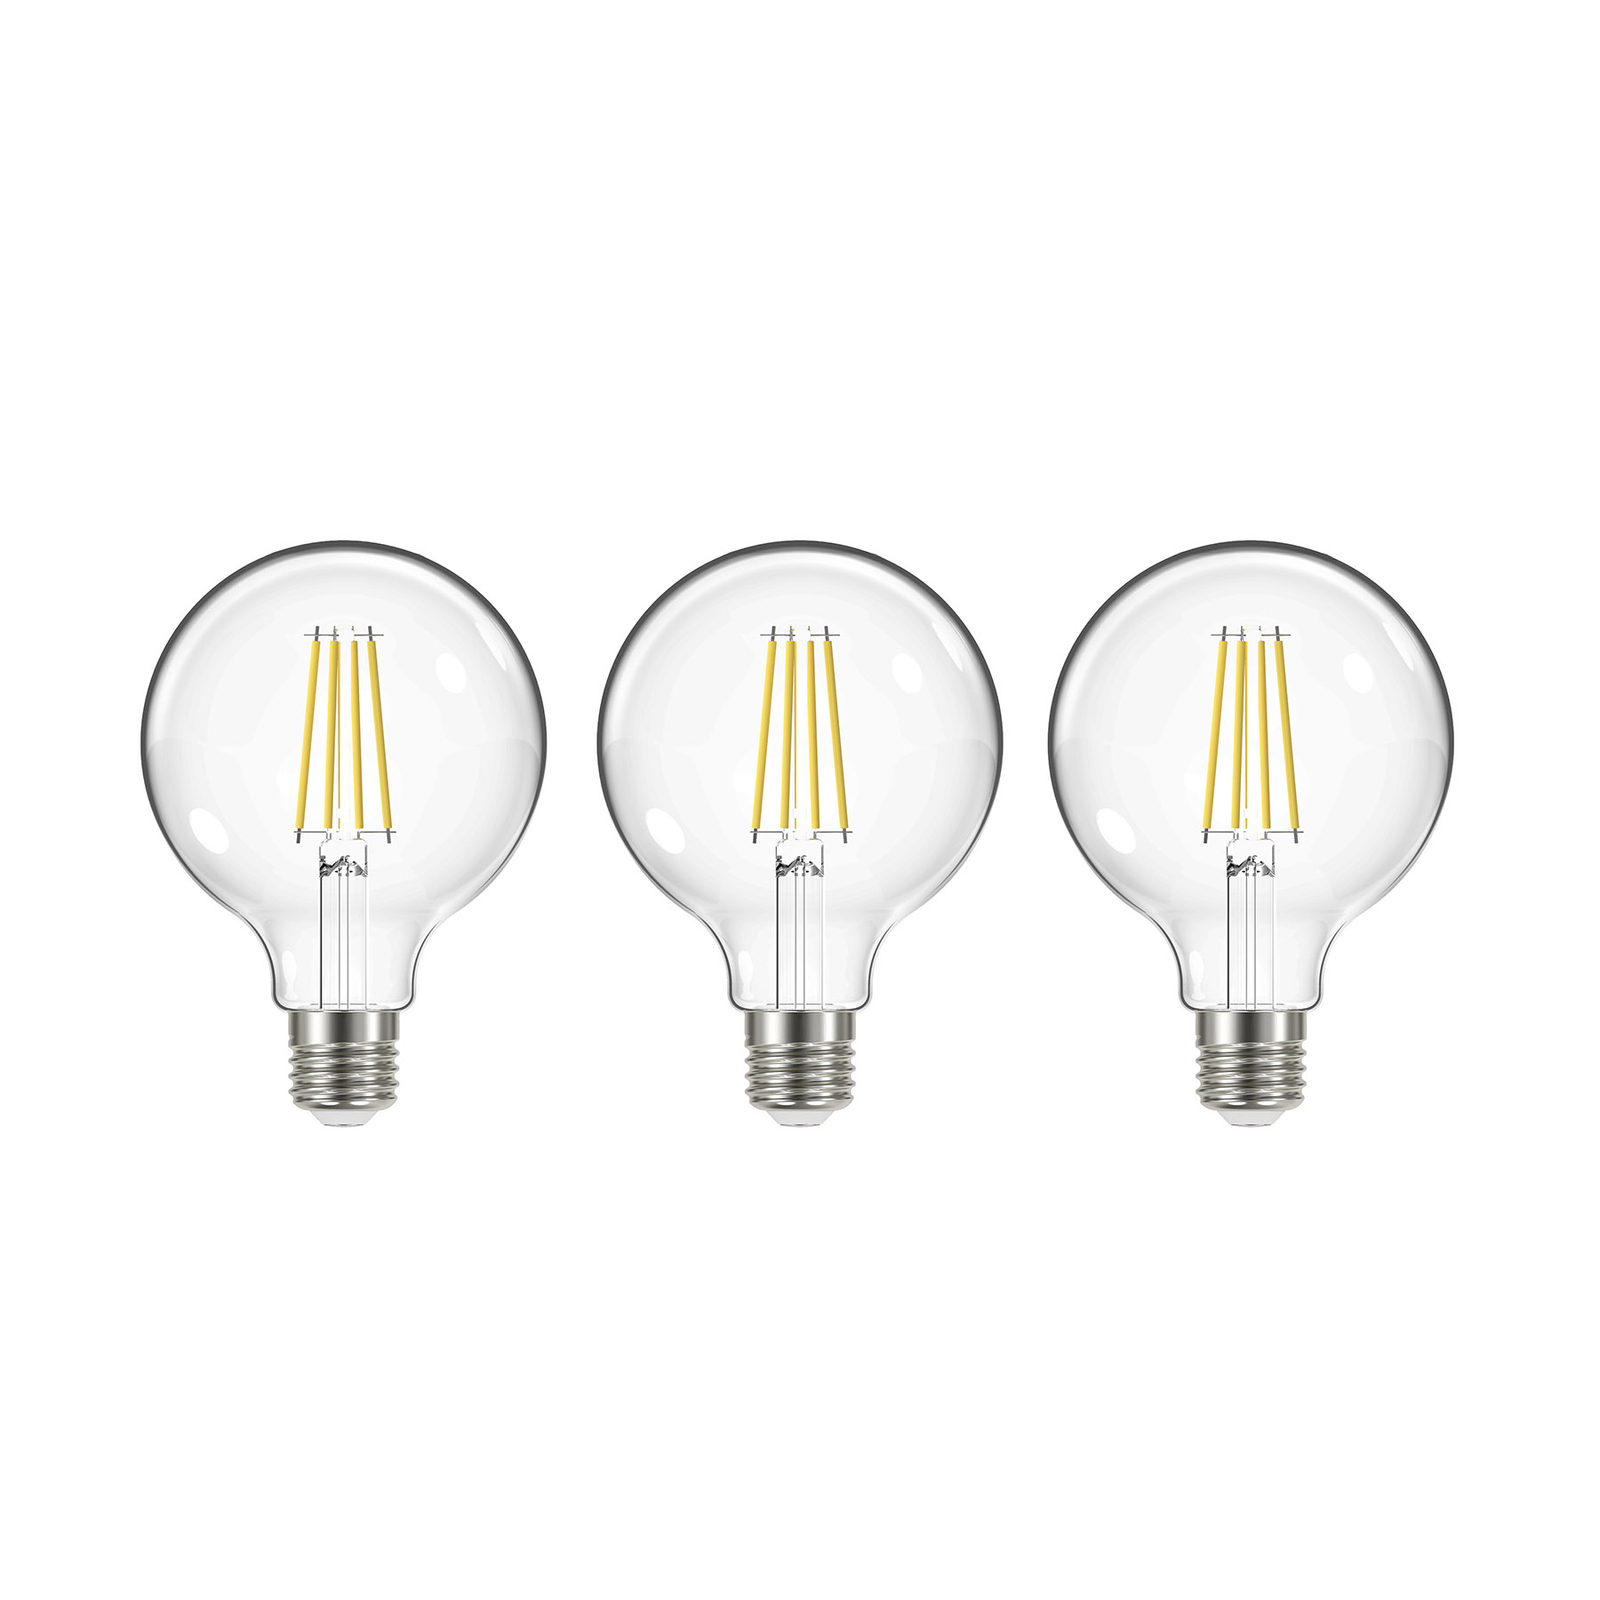 LED bulb filament, E27, G95, 3.8W, 3000K, 806lm, 3pcs